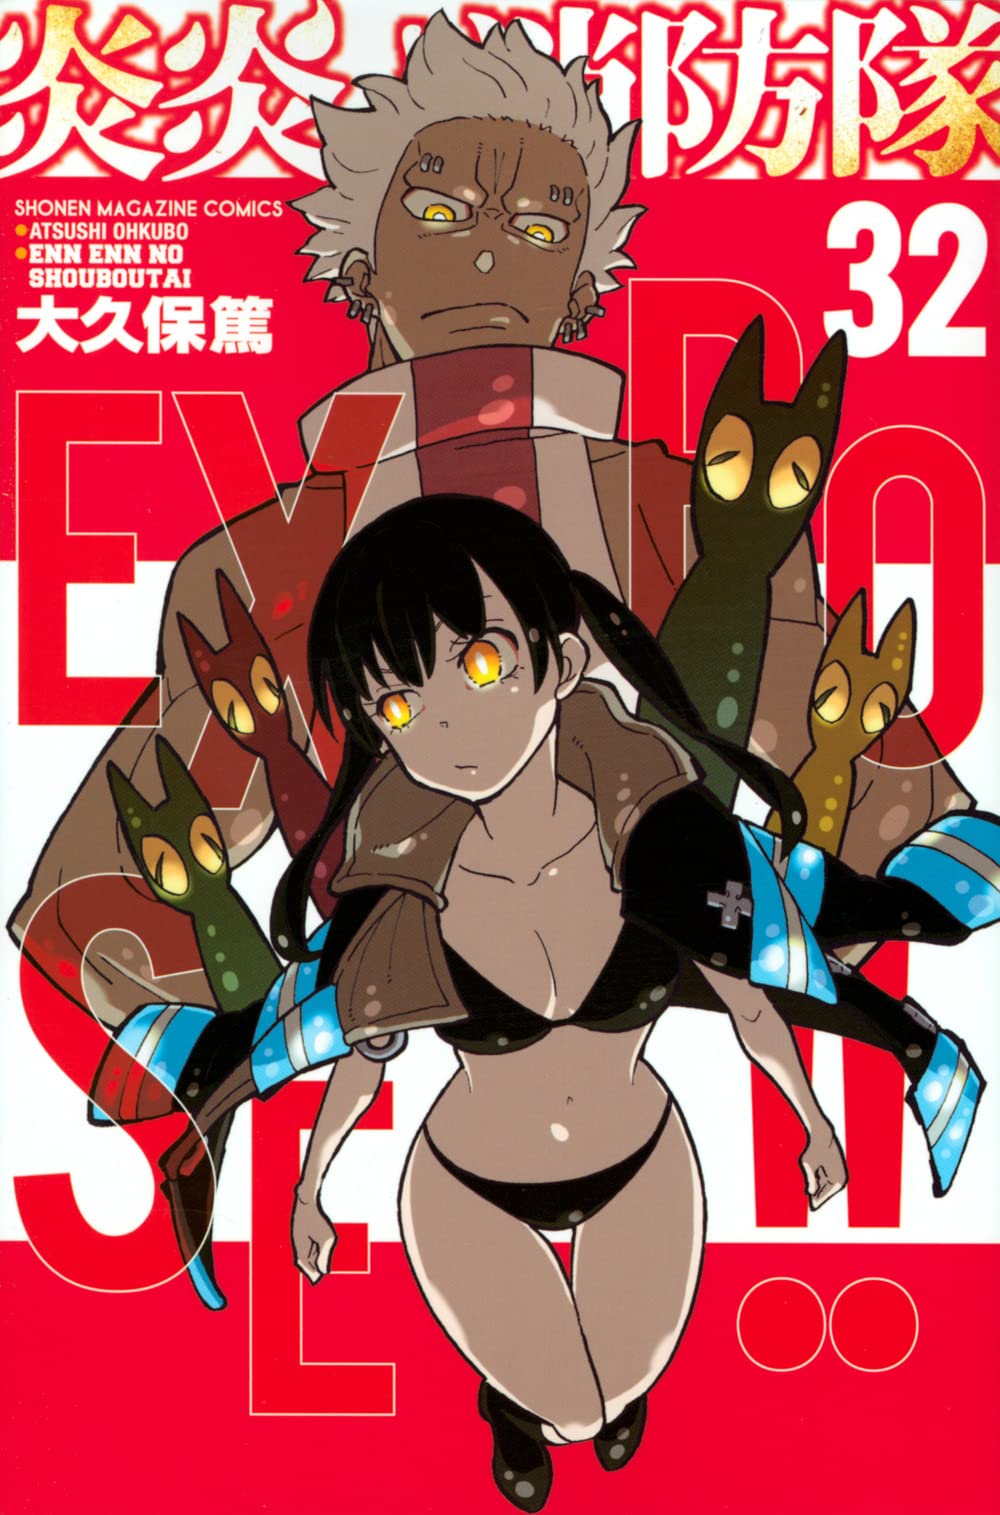 Fire Force Volume 7 (Enen no Shouboutai) - Manga Store 